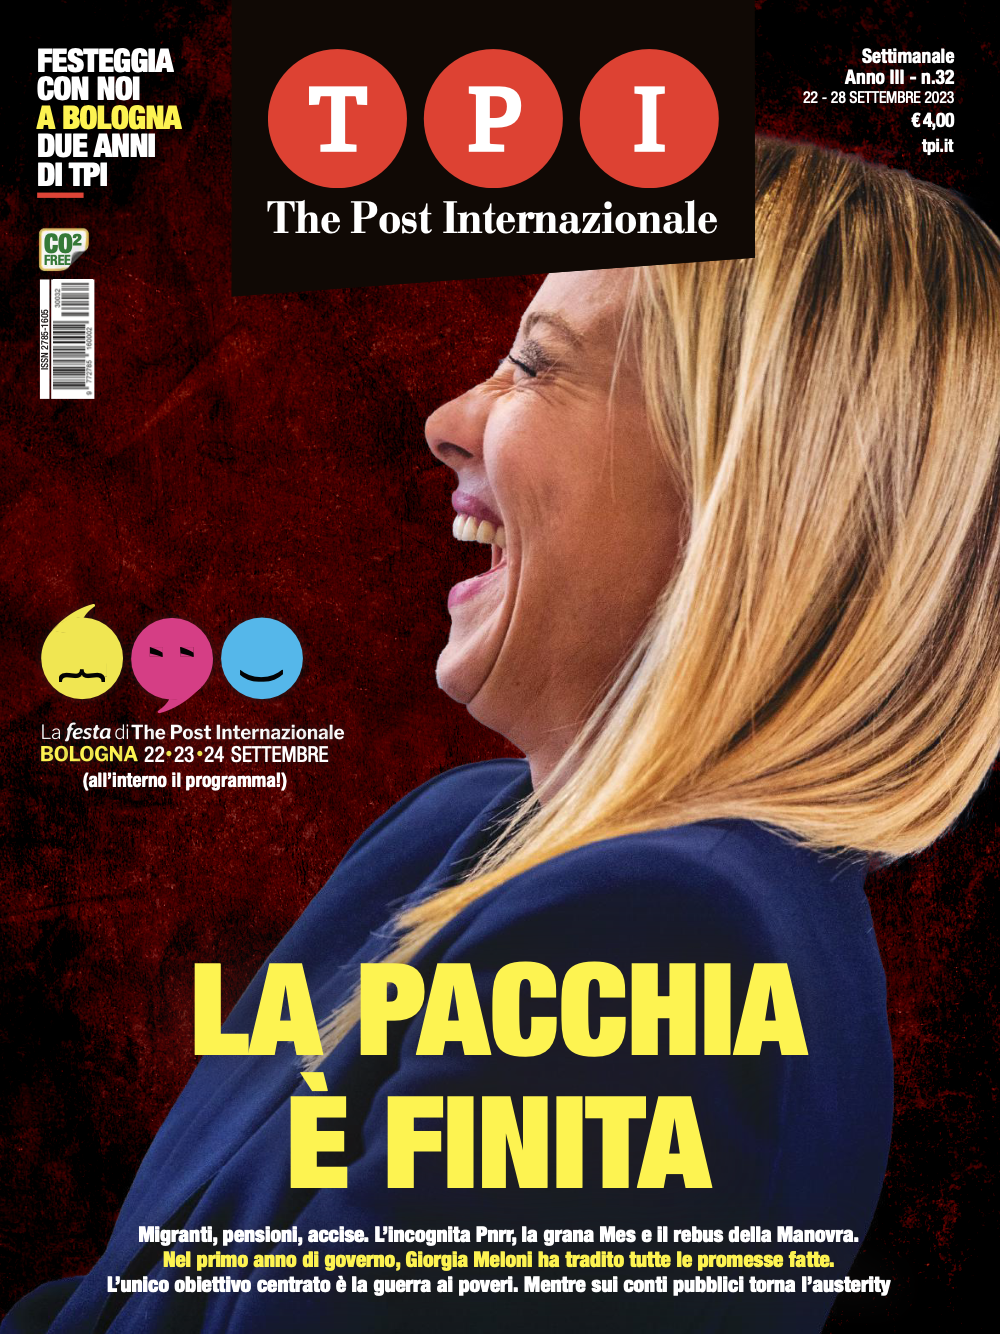 The Post Internazionale